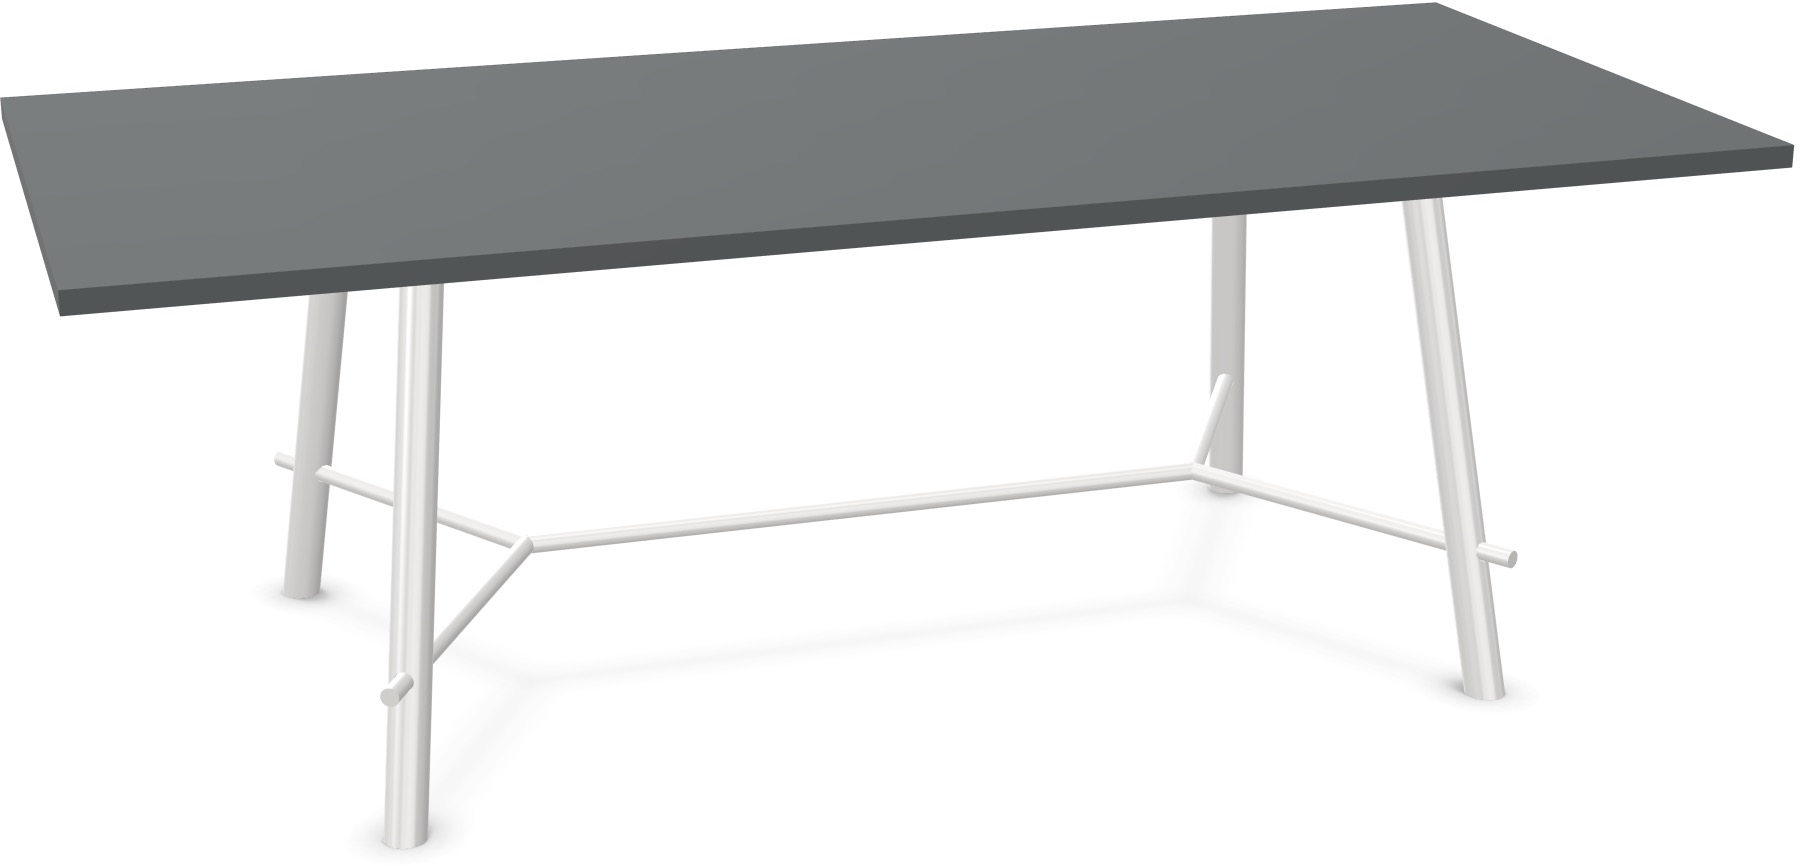 Record Living Maxi Tisch in Anthrazit / Weiss präsentiert im Onlineshop von KAQTU Design AG. Esstisch ist von Infiniti Design